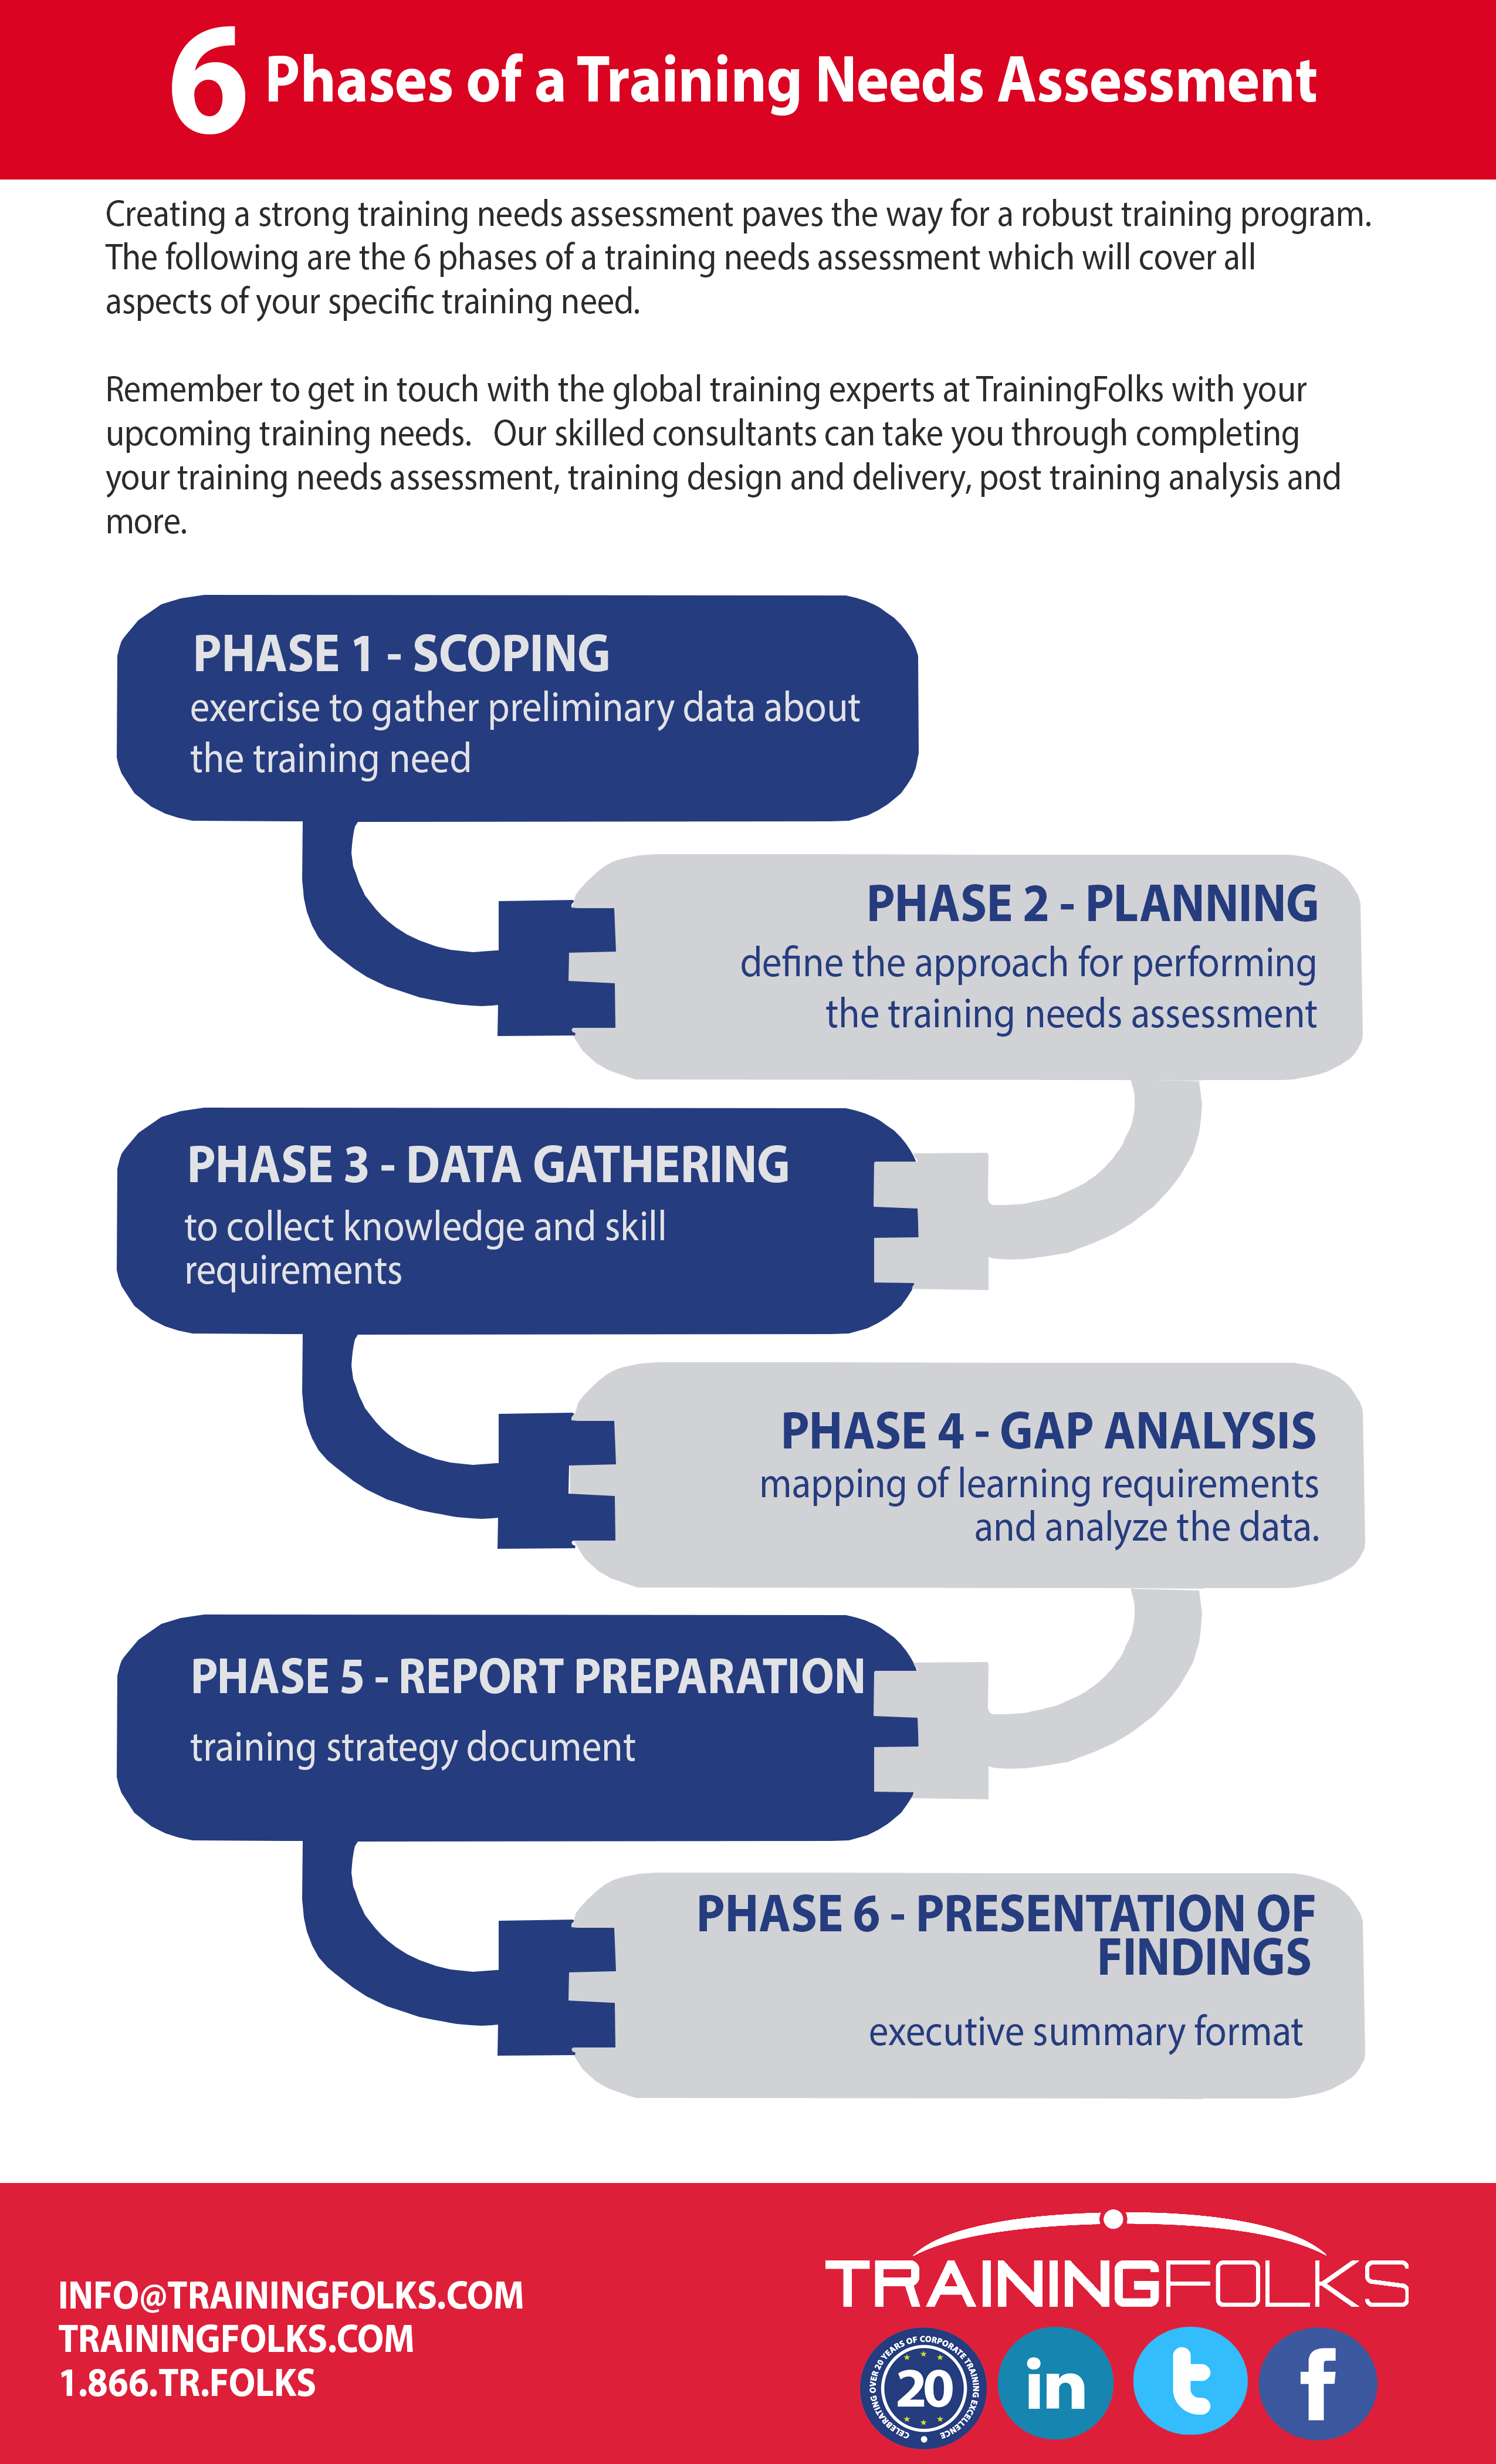 Training Needs Assessment 6 Phases_TrainingFolks